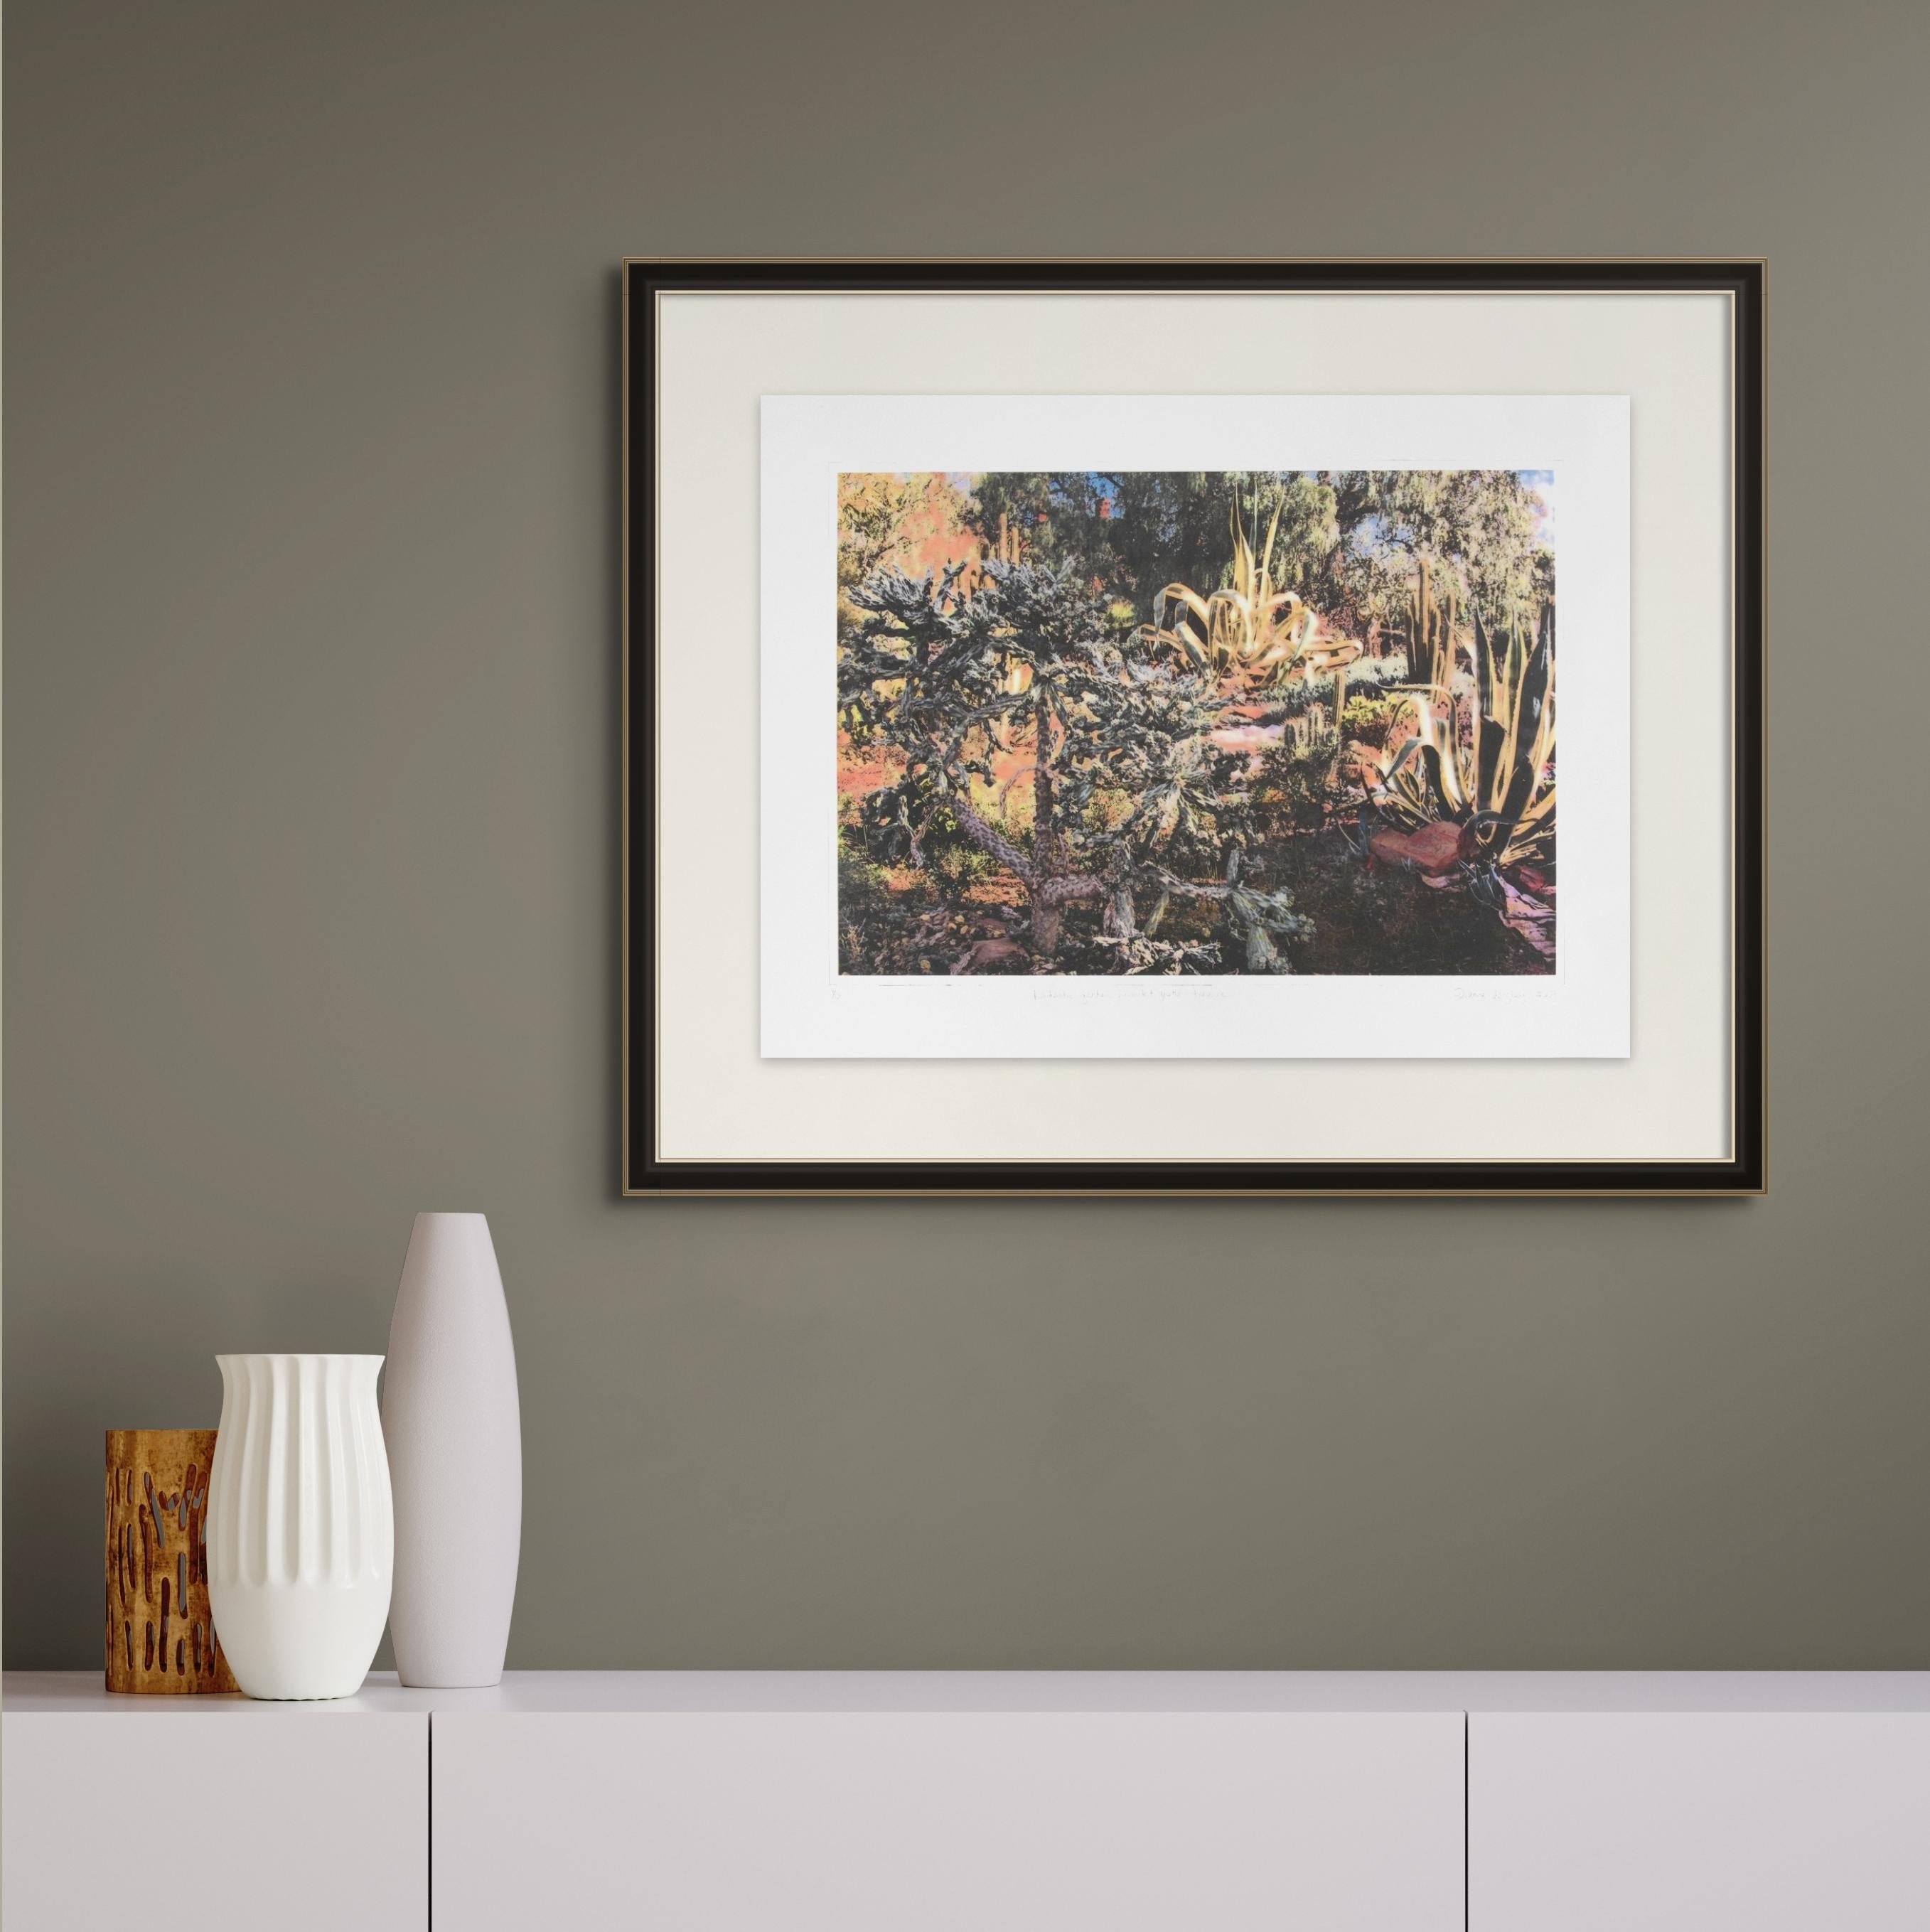 Fantastic garden succulent grotto - Terowie, intaglio colour, landscape print For Sale 1